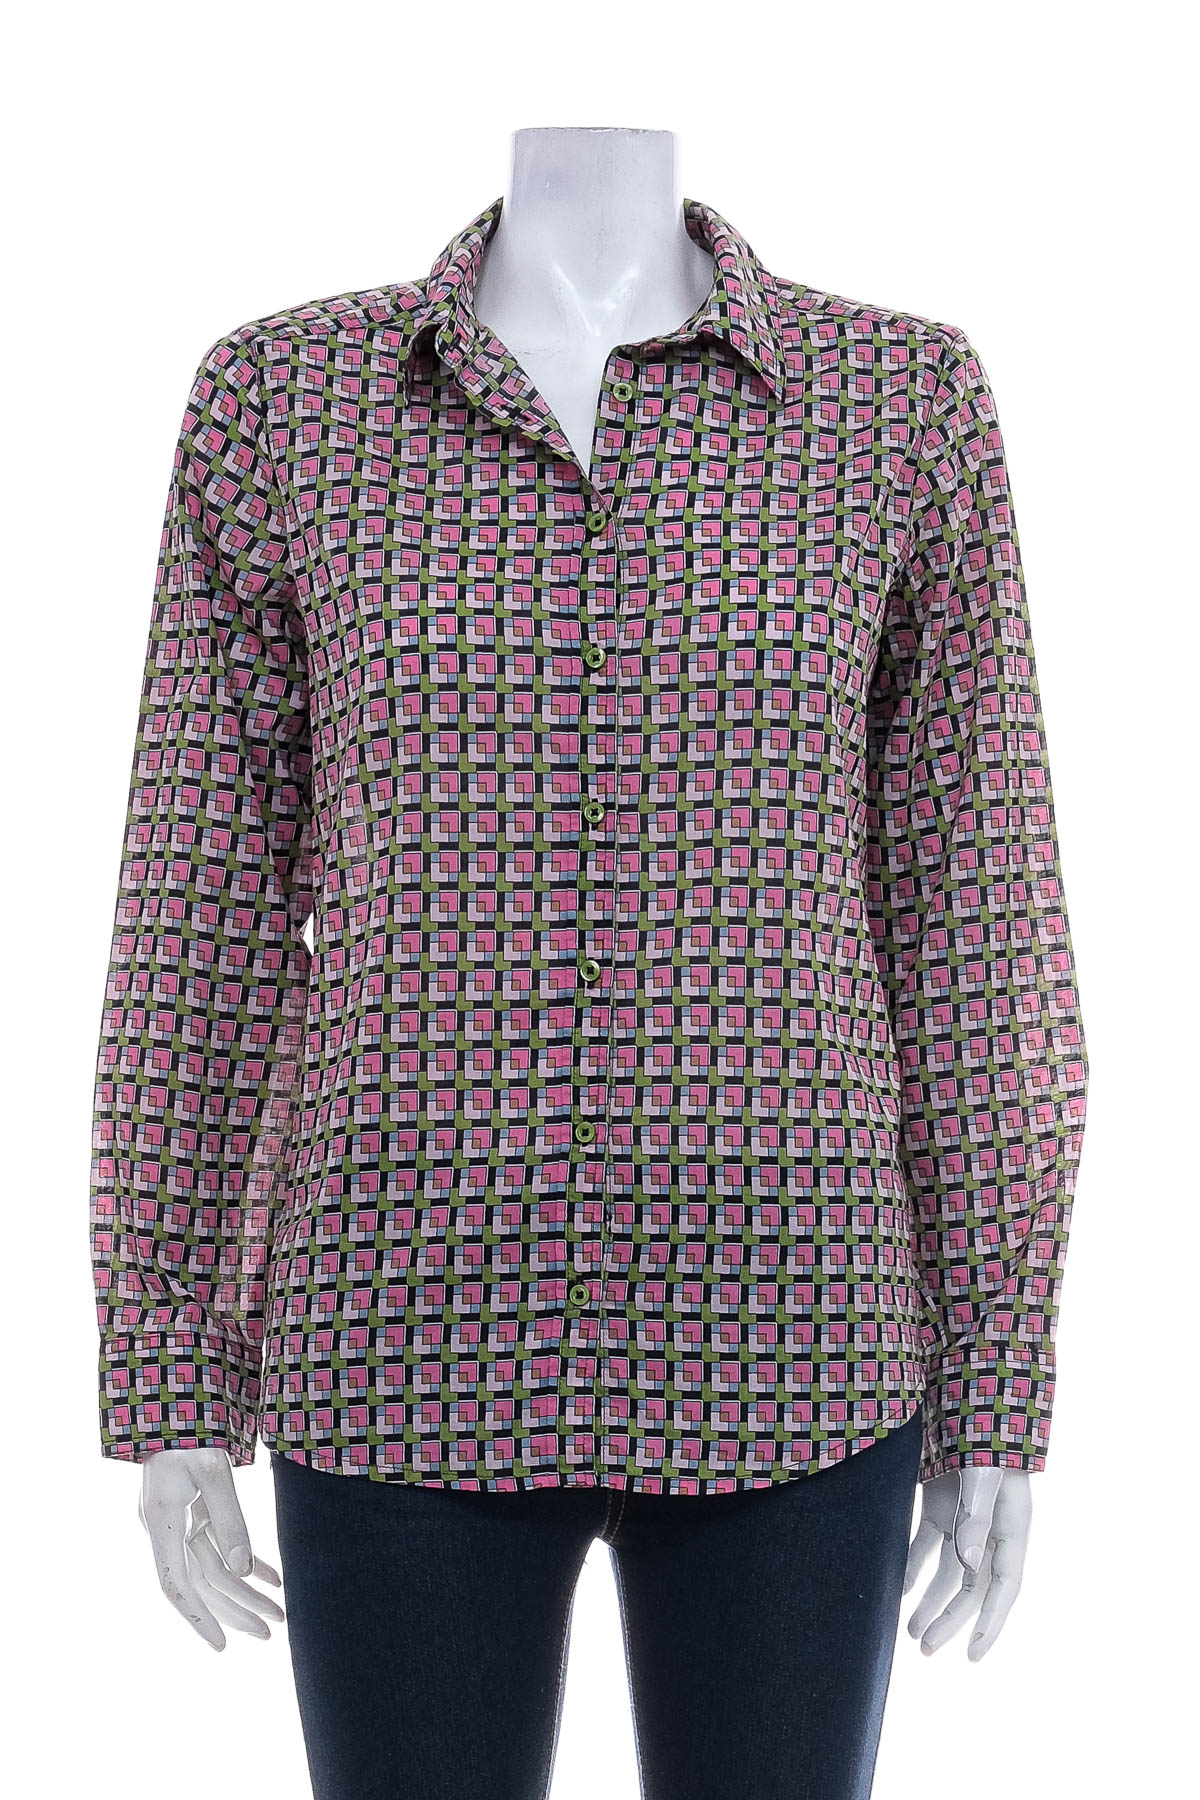 Γυναικείо πουκάμισο - United Colors of Benetton - 0